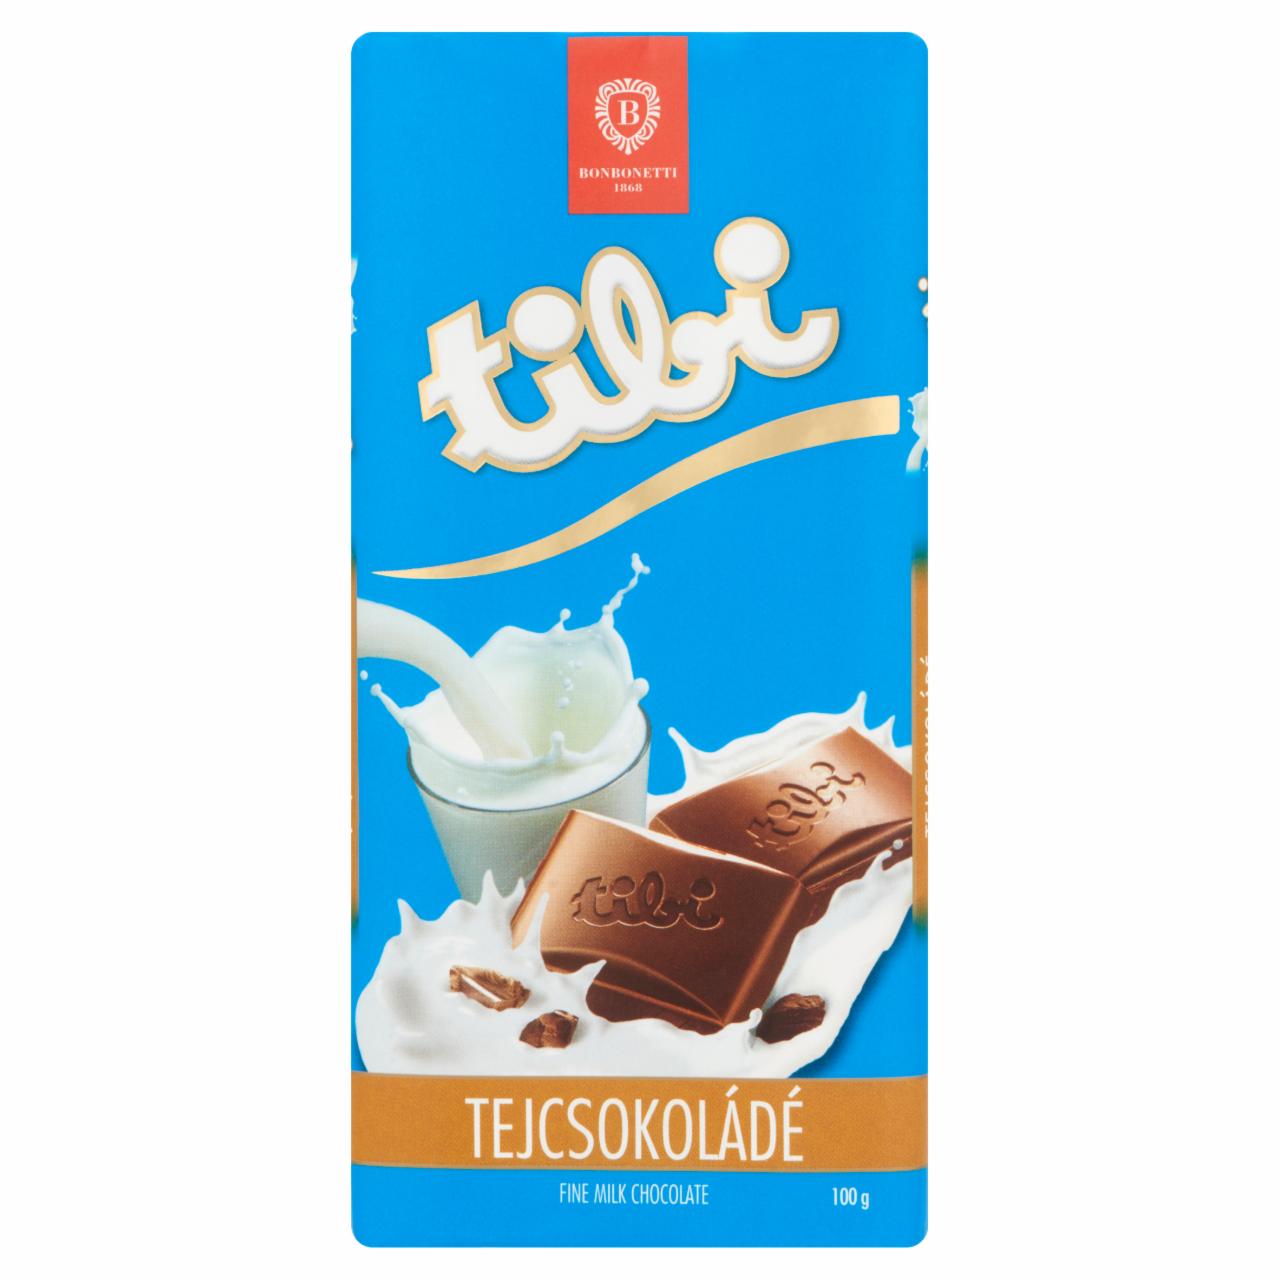 Képek - Tibi tejcsokoládé 100 g